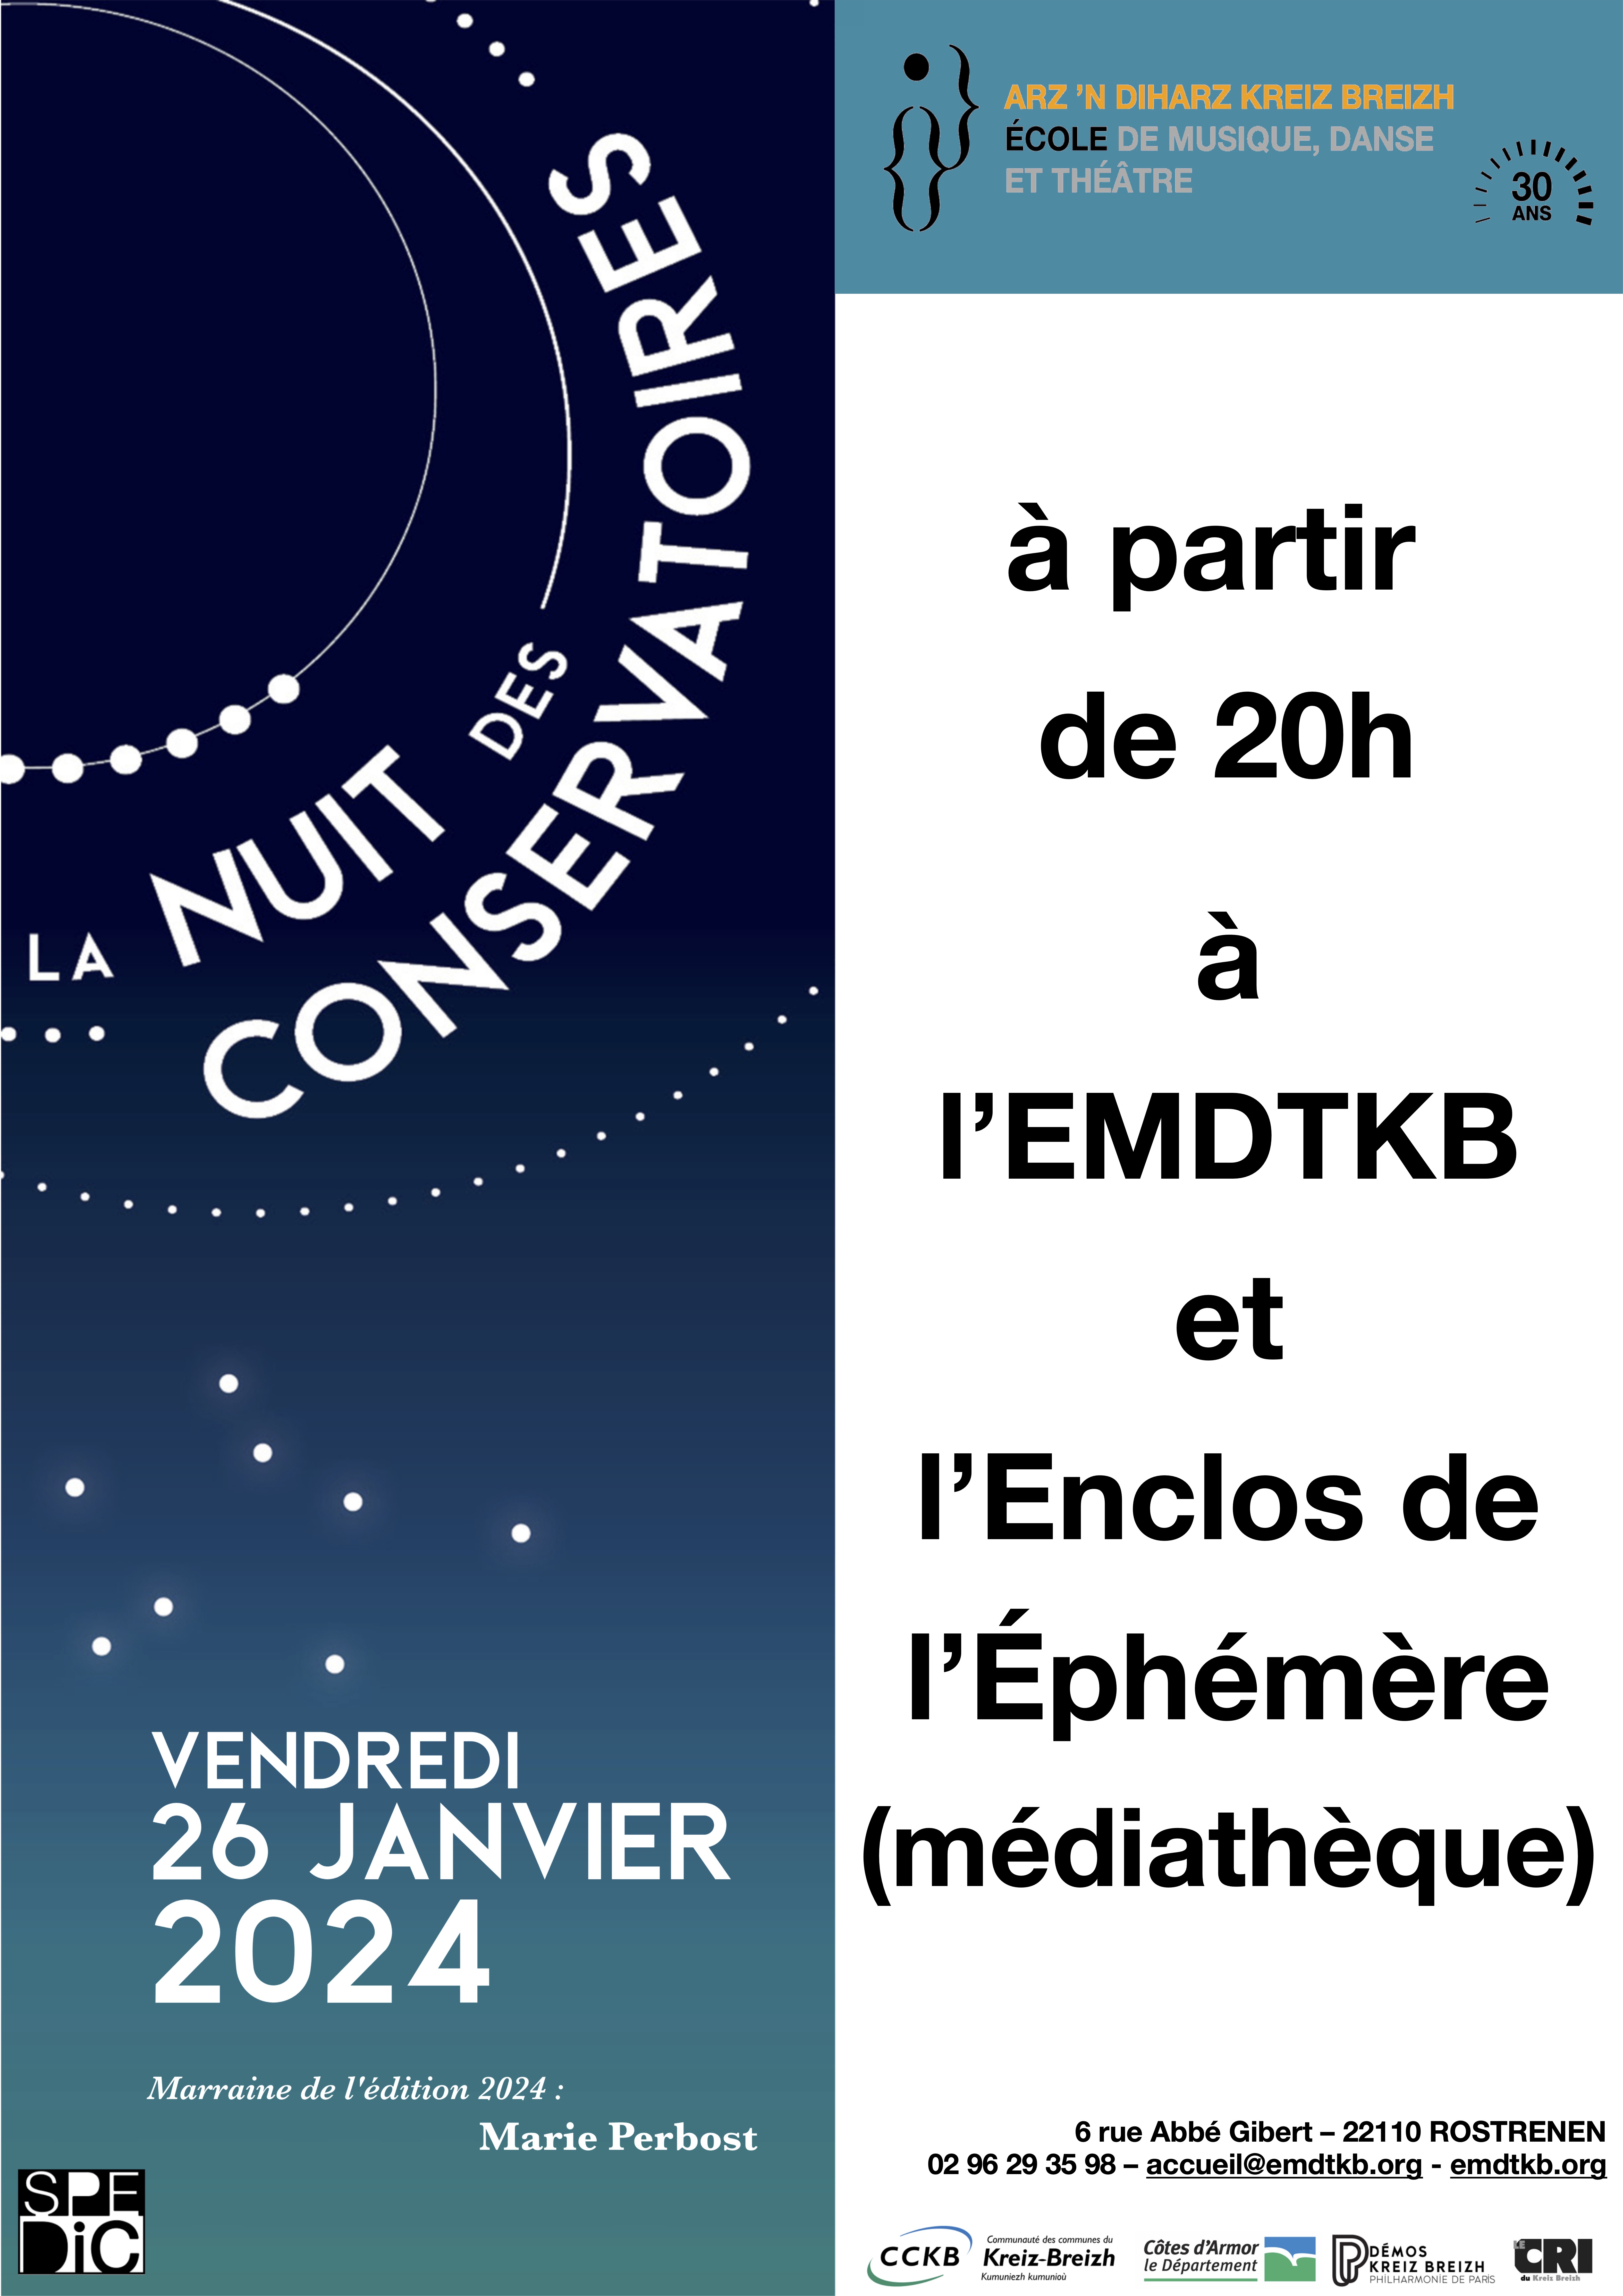 2024 01 26 Affiche Nuit des Conservatoire